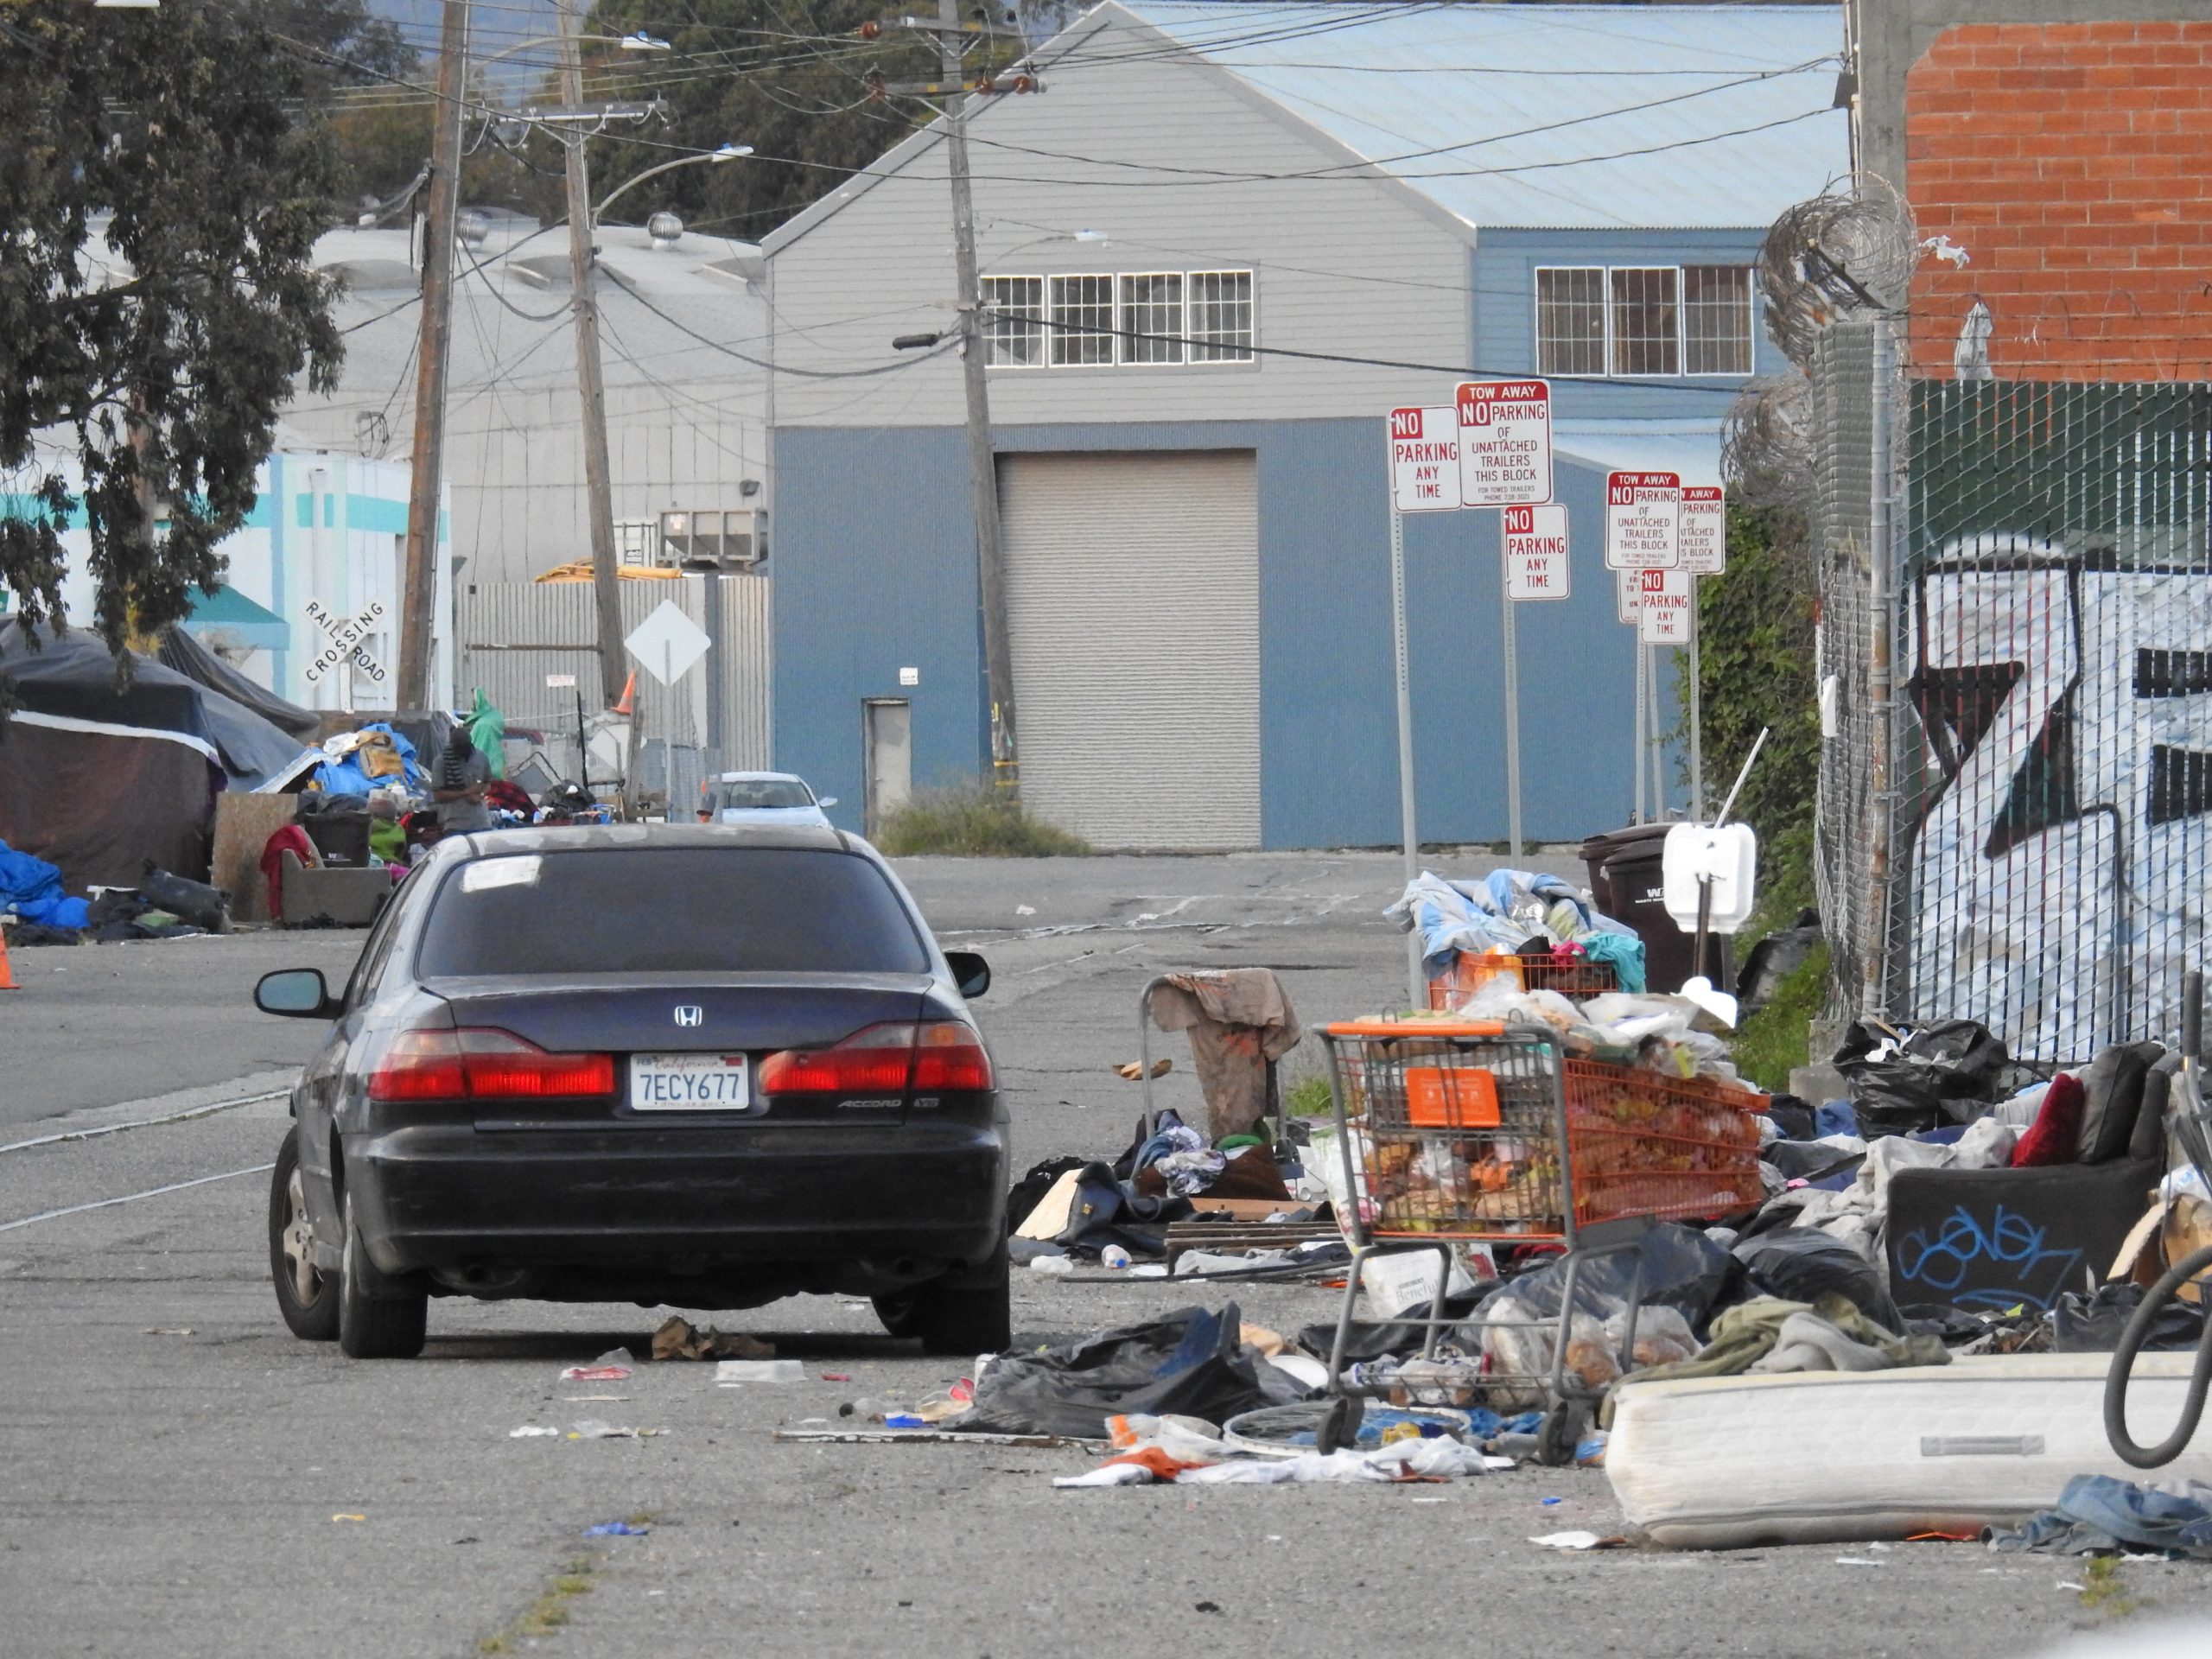 Trash on Wood Street in West Oakland. Photo by Scott Morris.